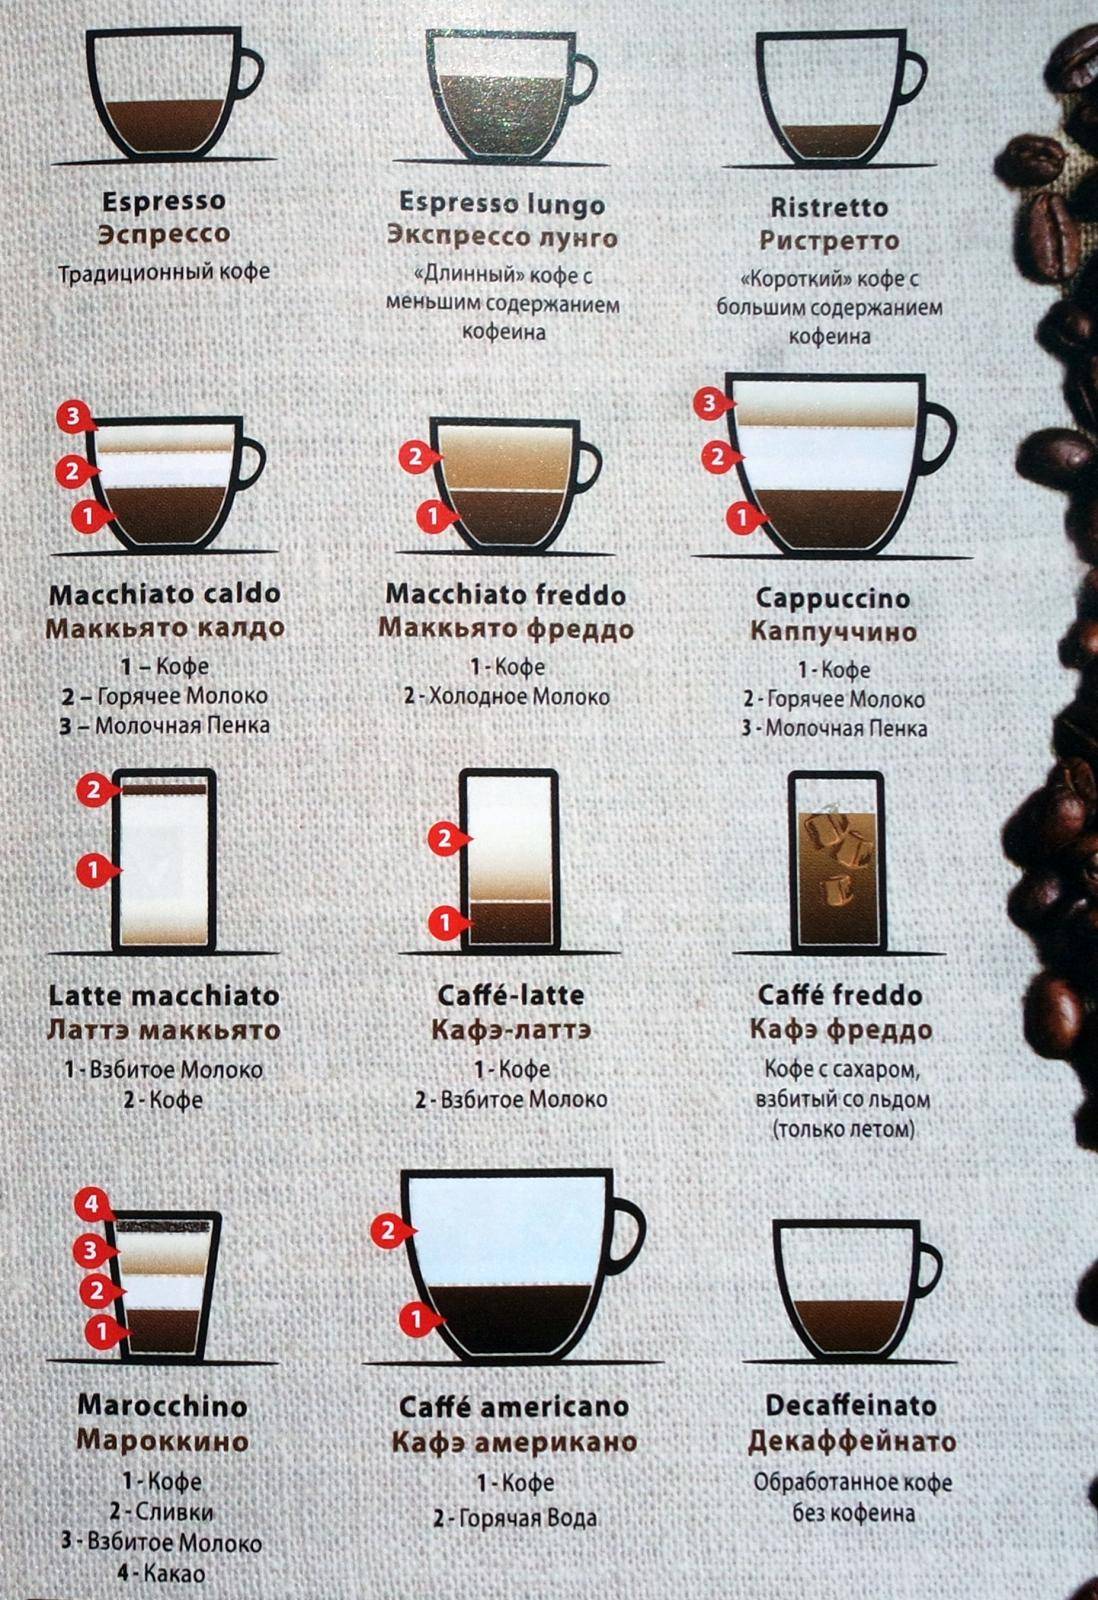 Кофеин в американо. Содержание кофеина в кофе. Количество кофеина в чашке кофе. Кофеин в кружке кофе.